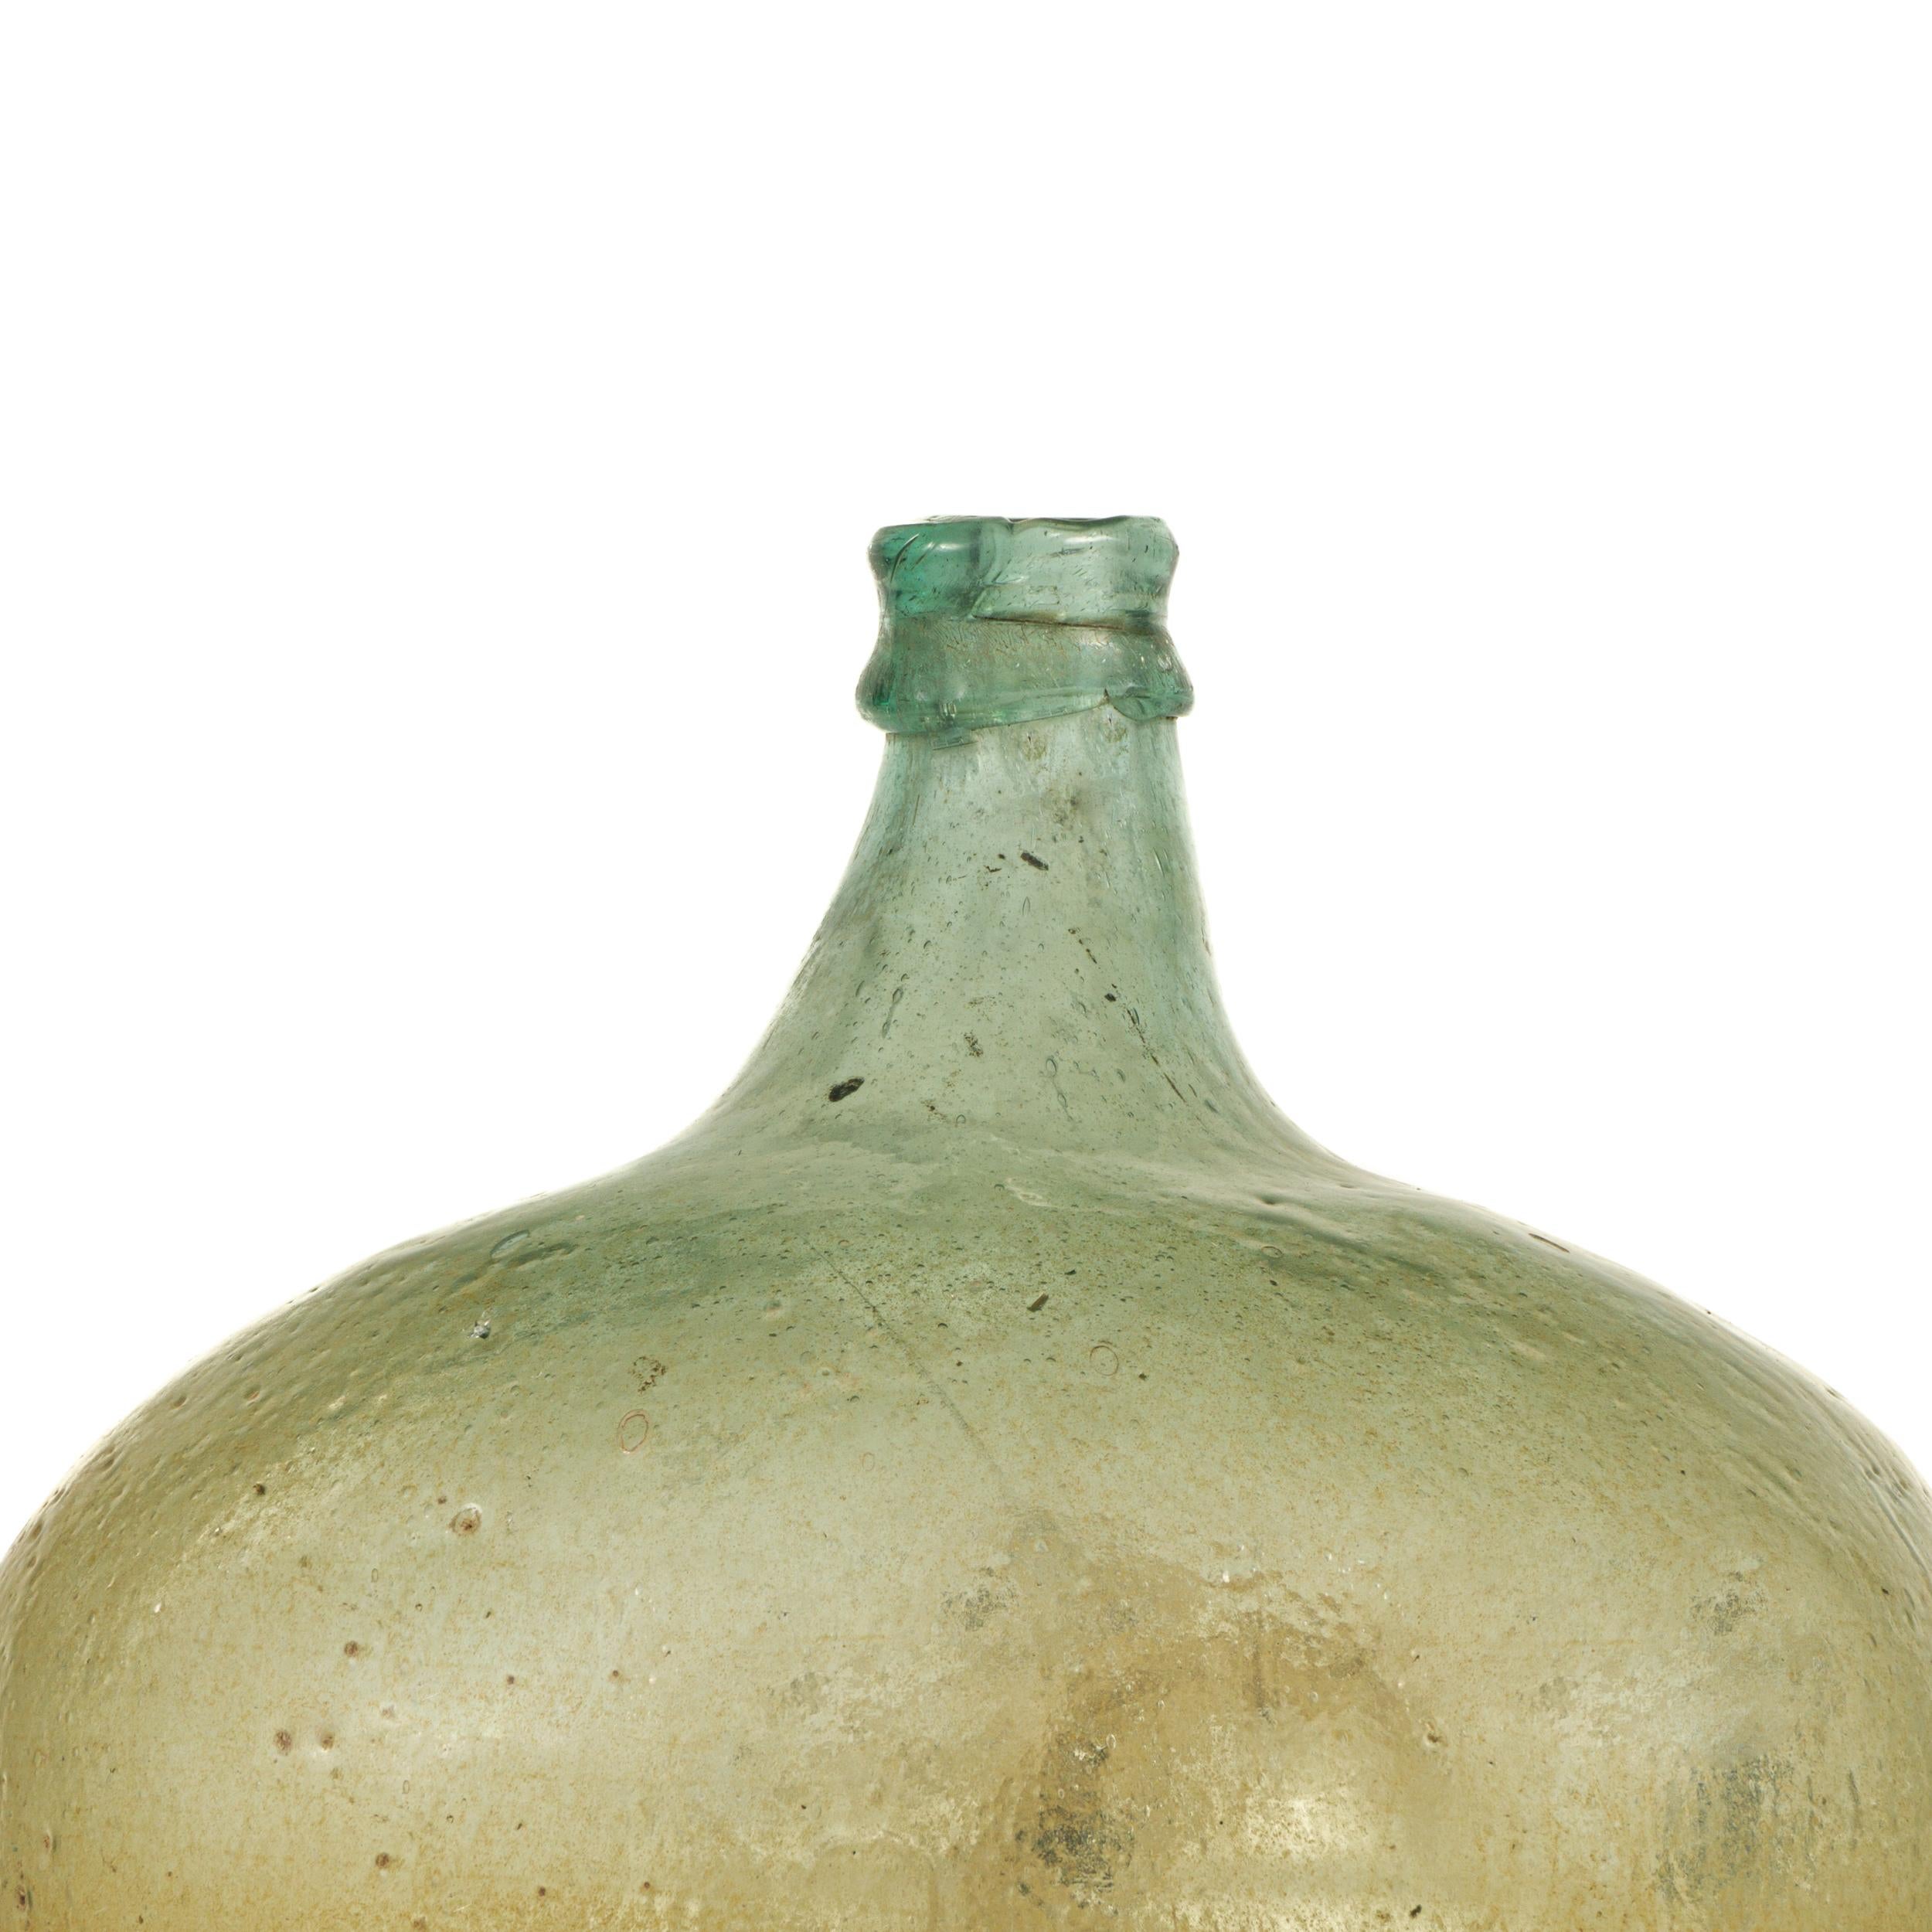 Grünes mundgeblasenes Glas aus dem späten 19. Jahrhundert aus Südmexiko.
Ursprünglich wurden sie als traditionelle Behälter hauptsächlich für die Lagerung und den Transport von Wein verwendet.
Heute können sie als dekorative Accessoires überall in